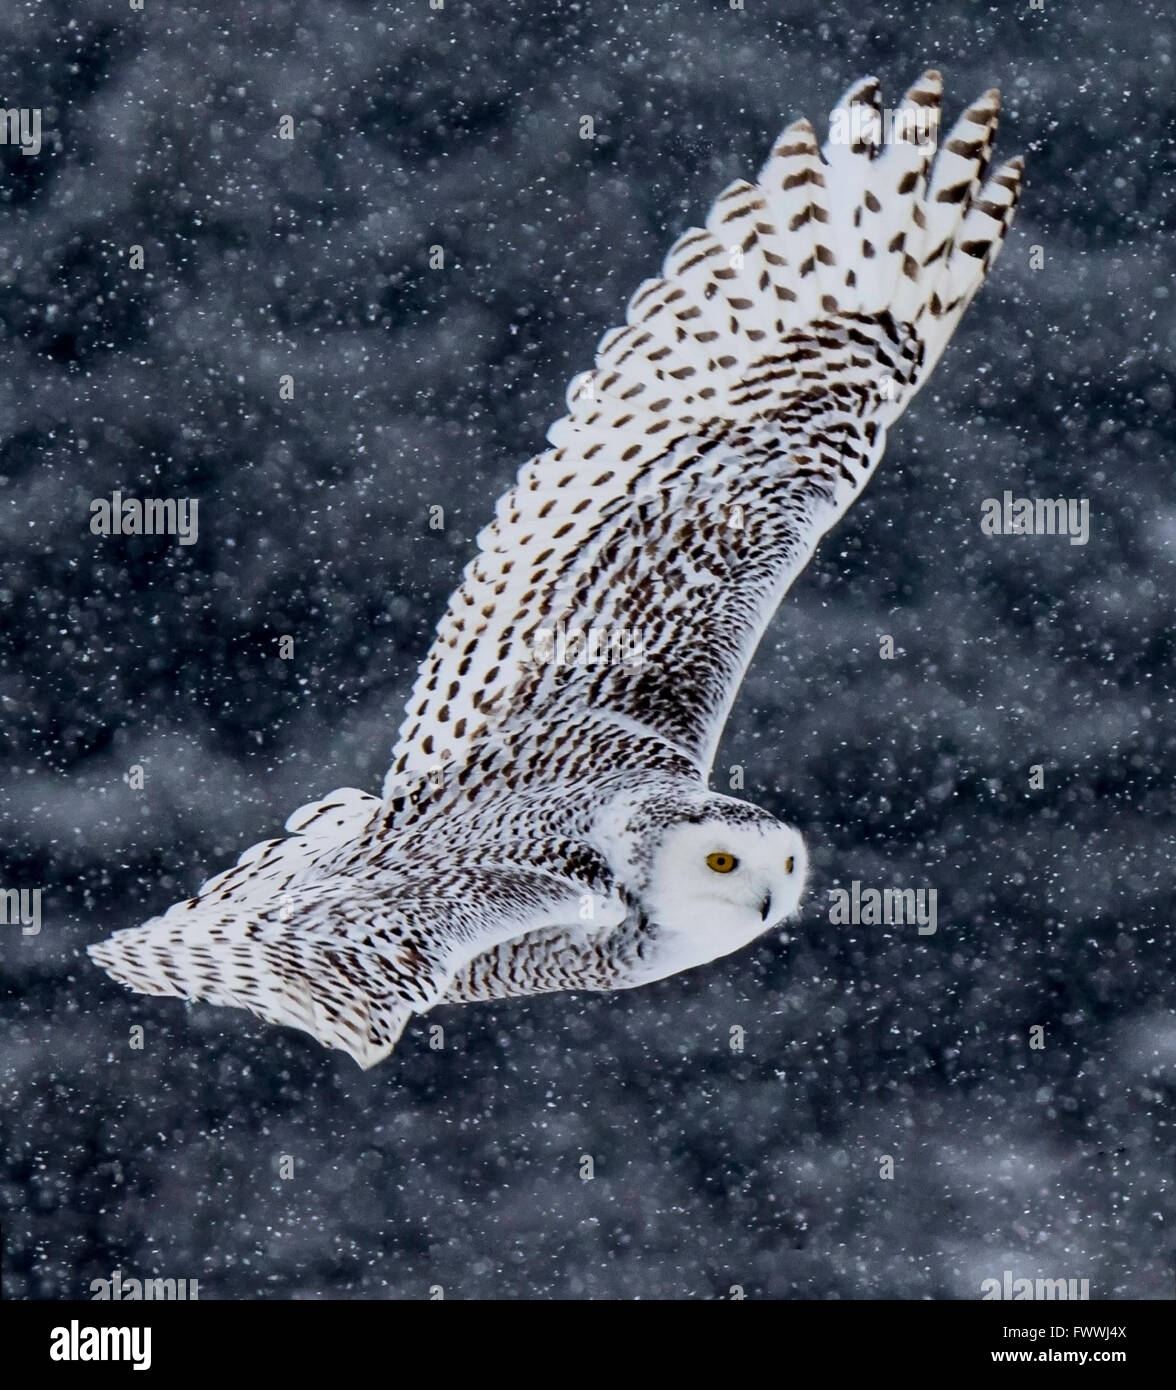 Snowy Owl Flying